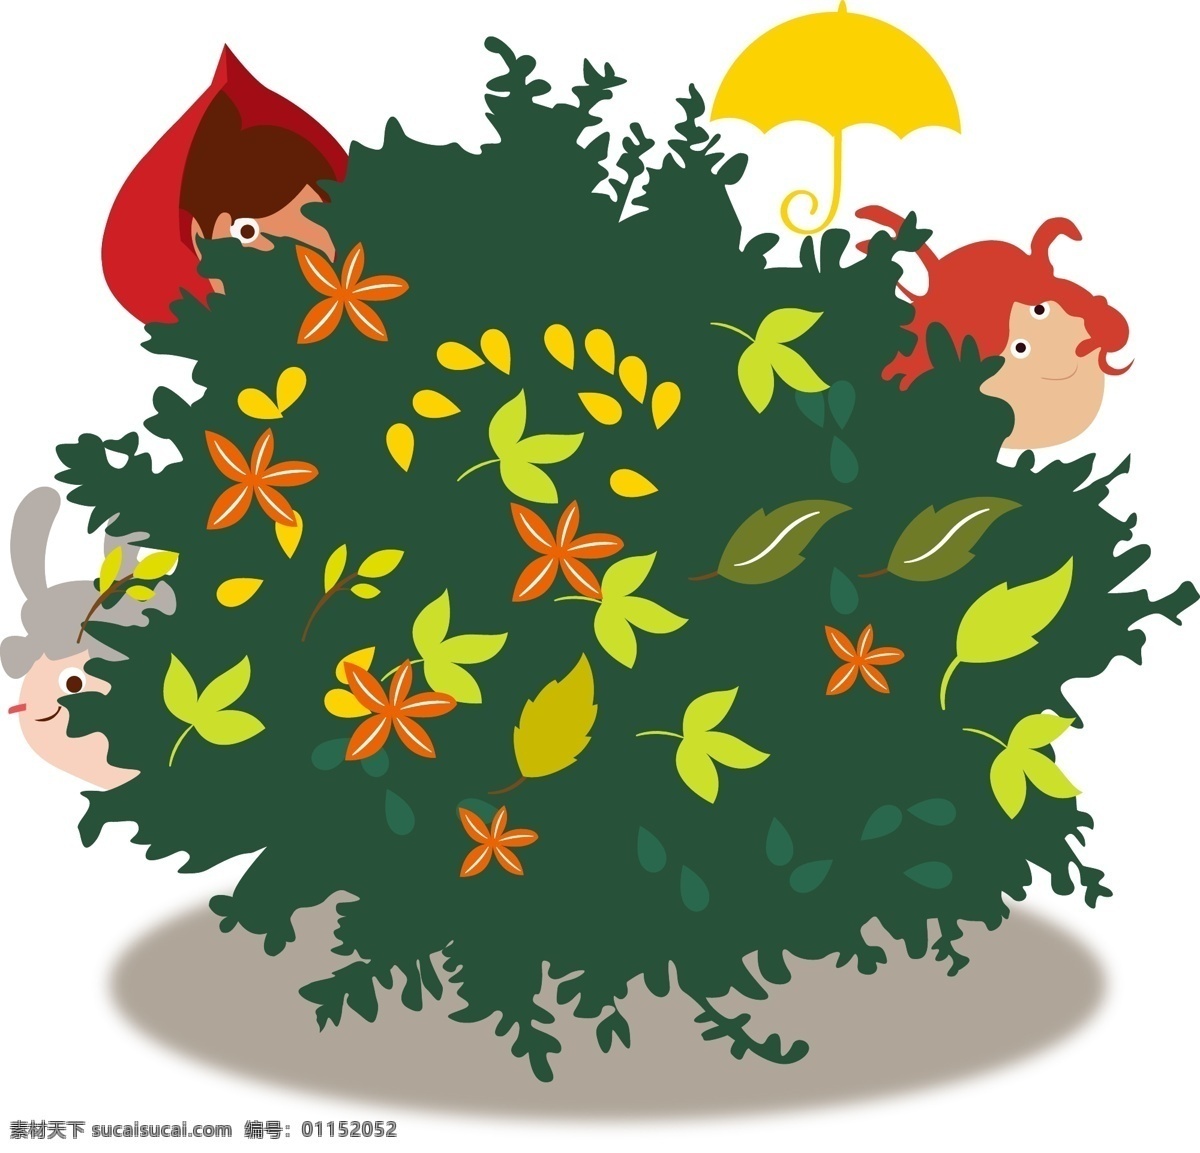 矢量 卡通 手绘 灌木 树木 树叶 女孩 躲猫猫 雨伞 黄色 红色 绿色 扁平化 植物